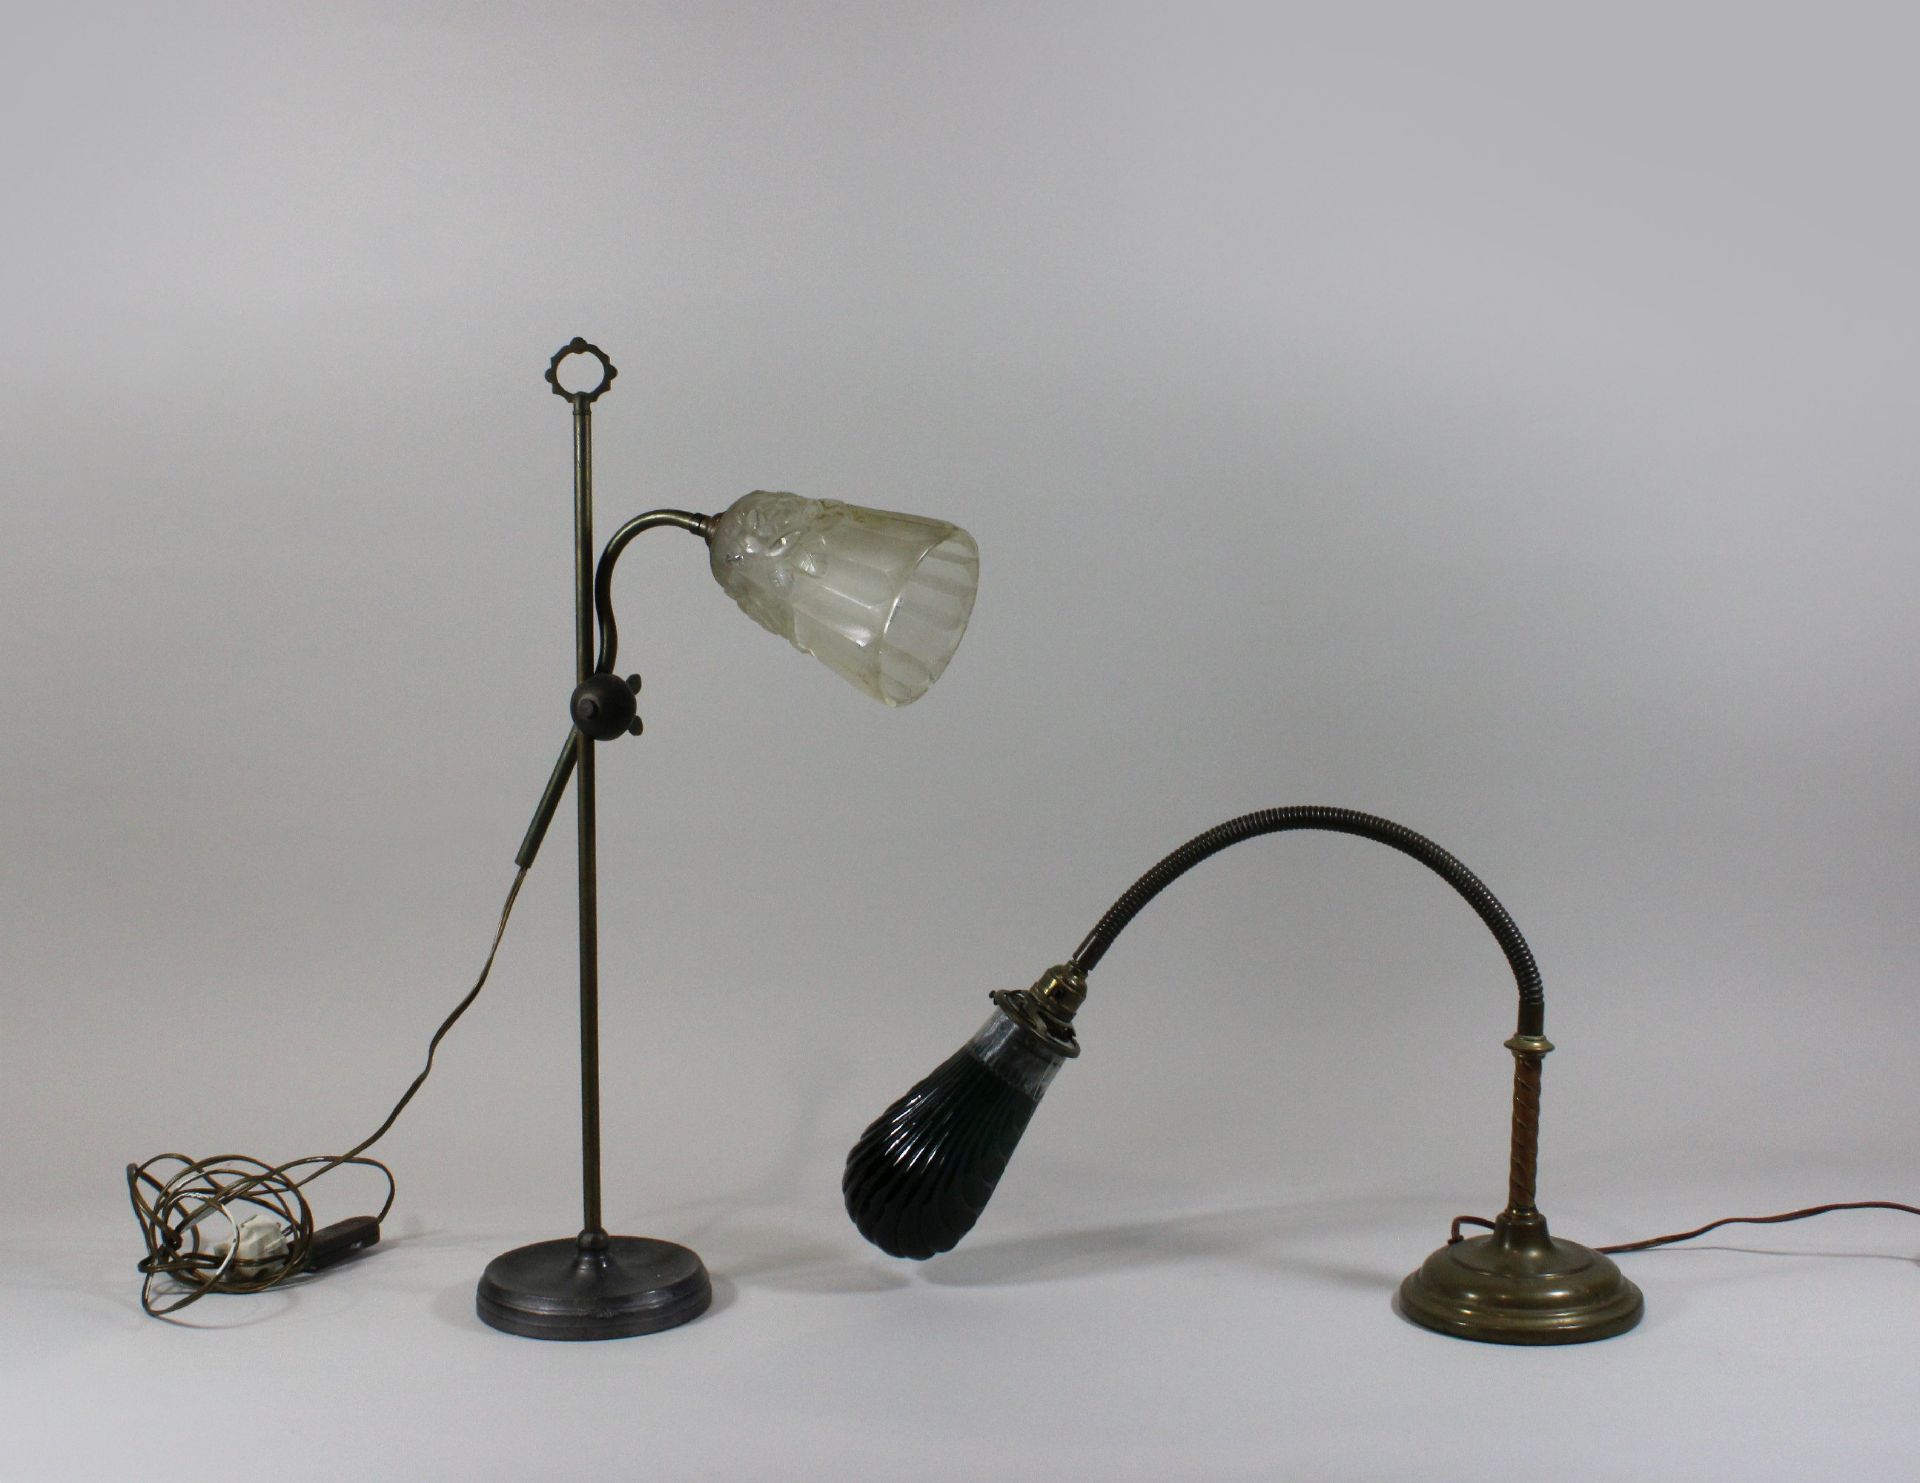 Zwei Tischlampen, Jugendstill, Frankreich, 19. Jh., Metall, mit Glashaube, H vom 60 bis 76 cm, Risse